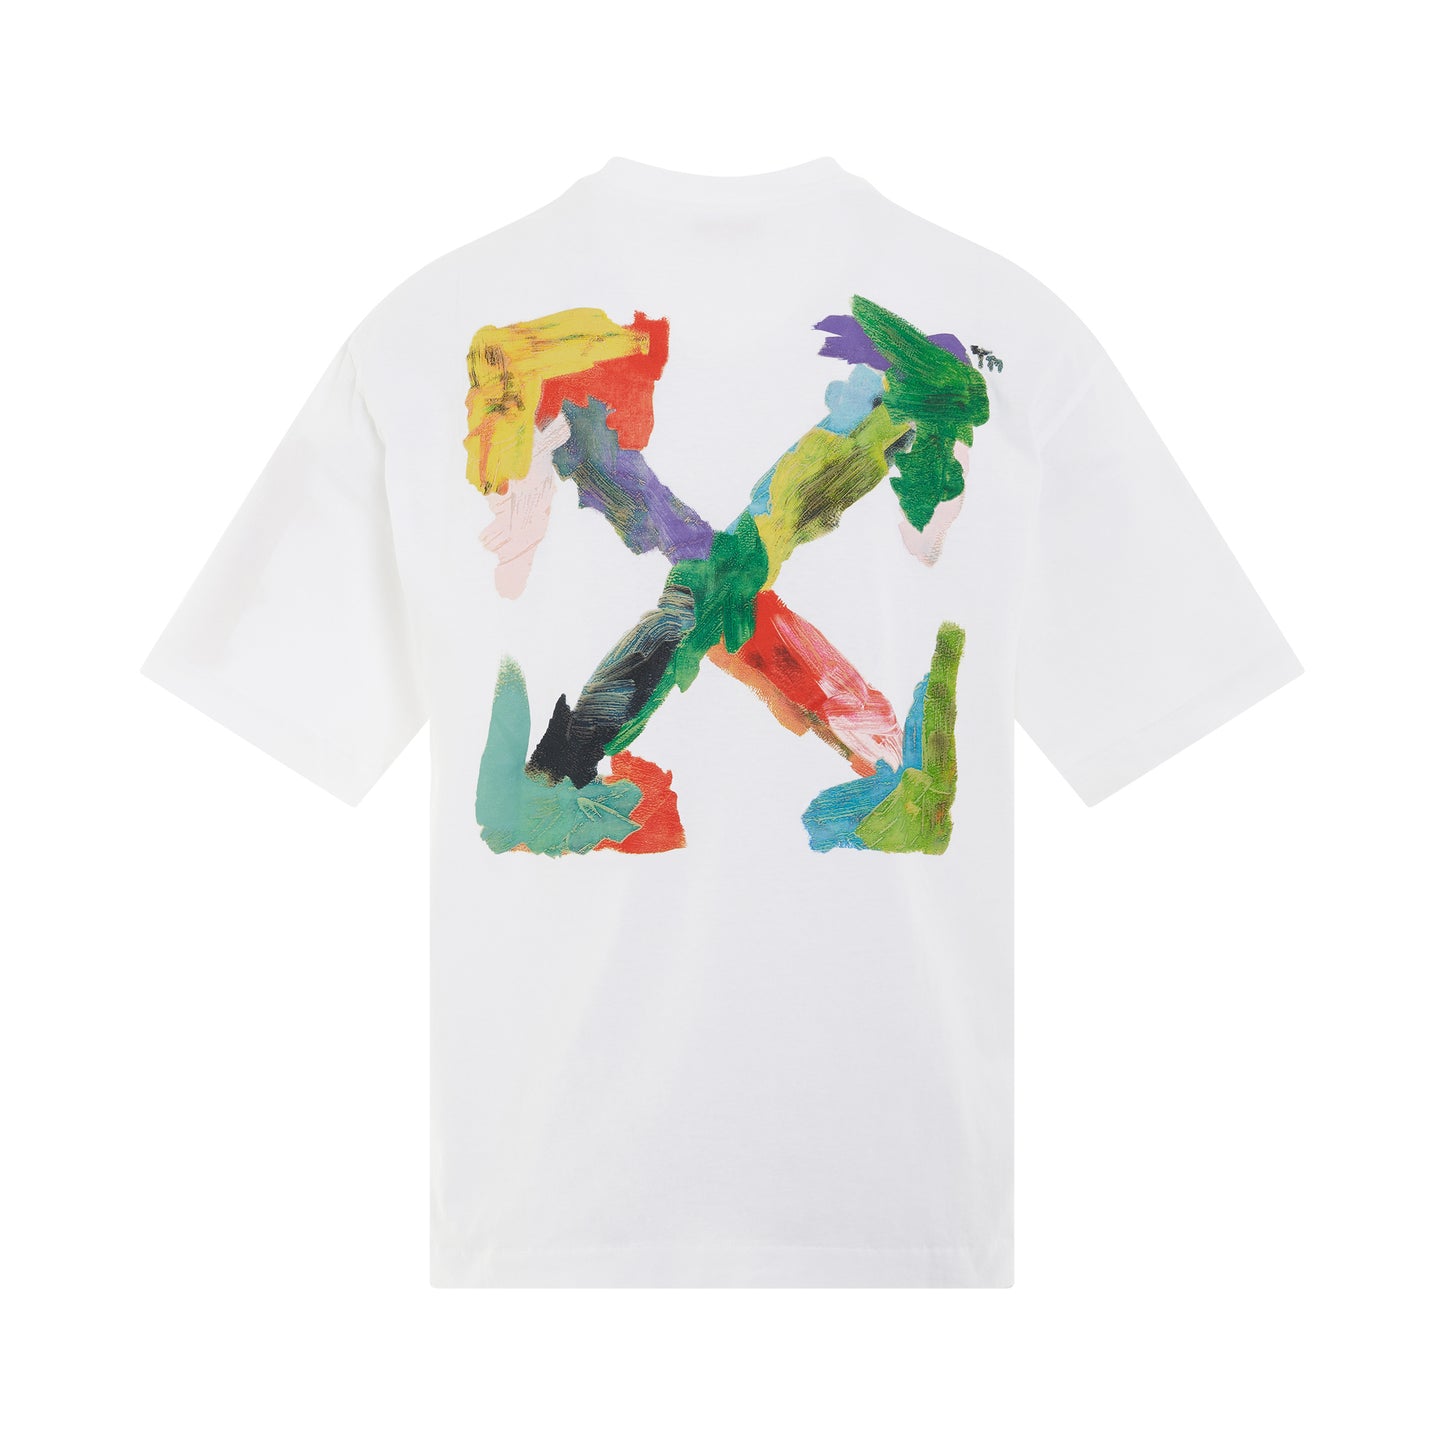 Brush Arrow Oversized Skate T-Shirt in White/Multicolour